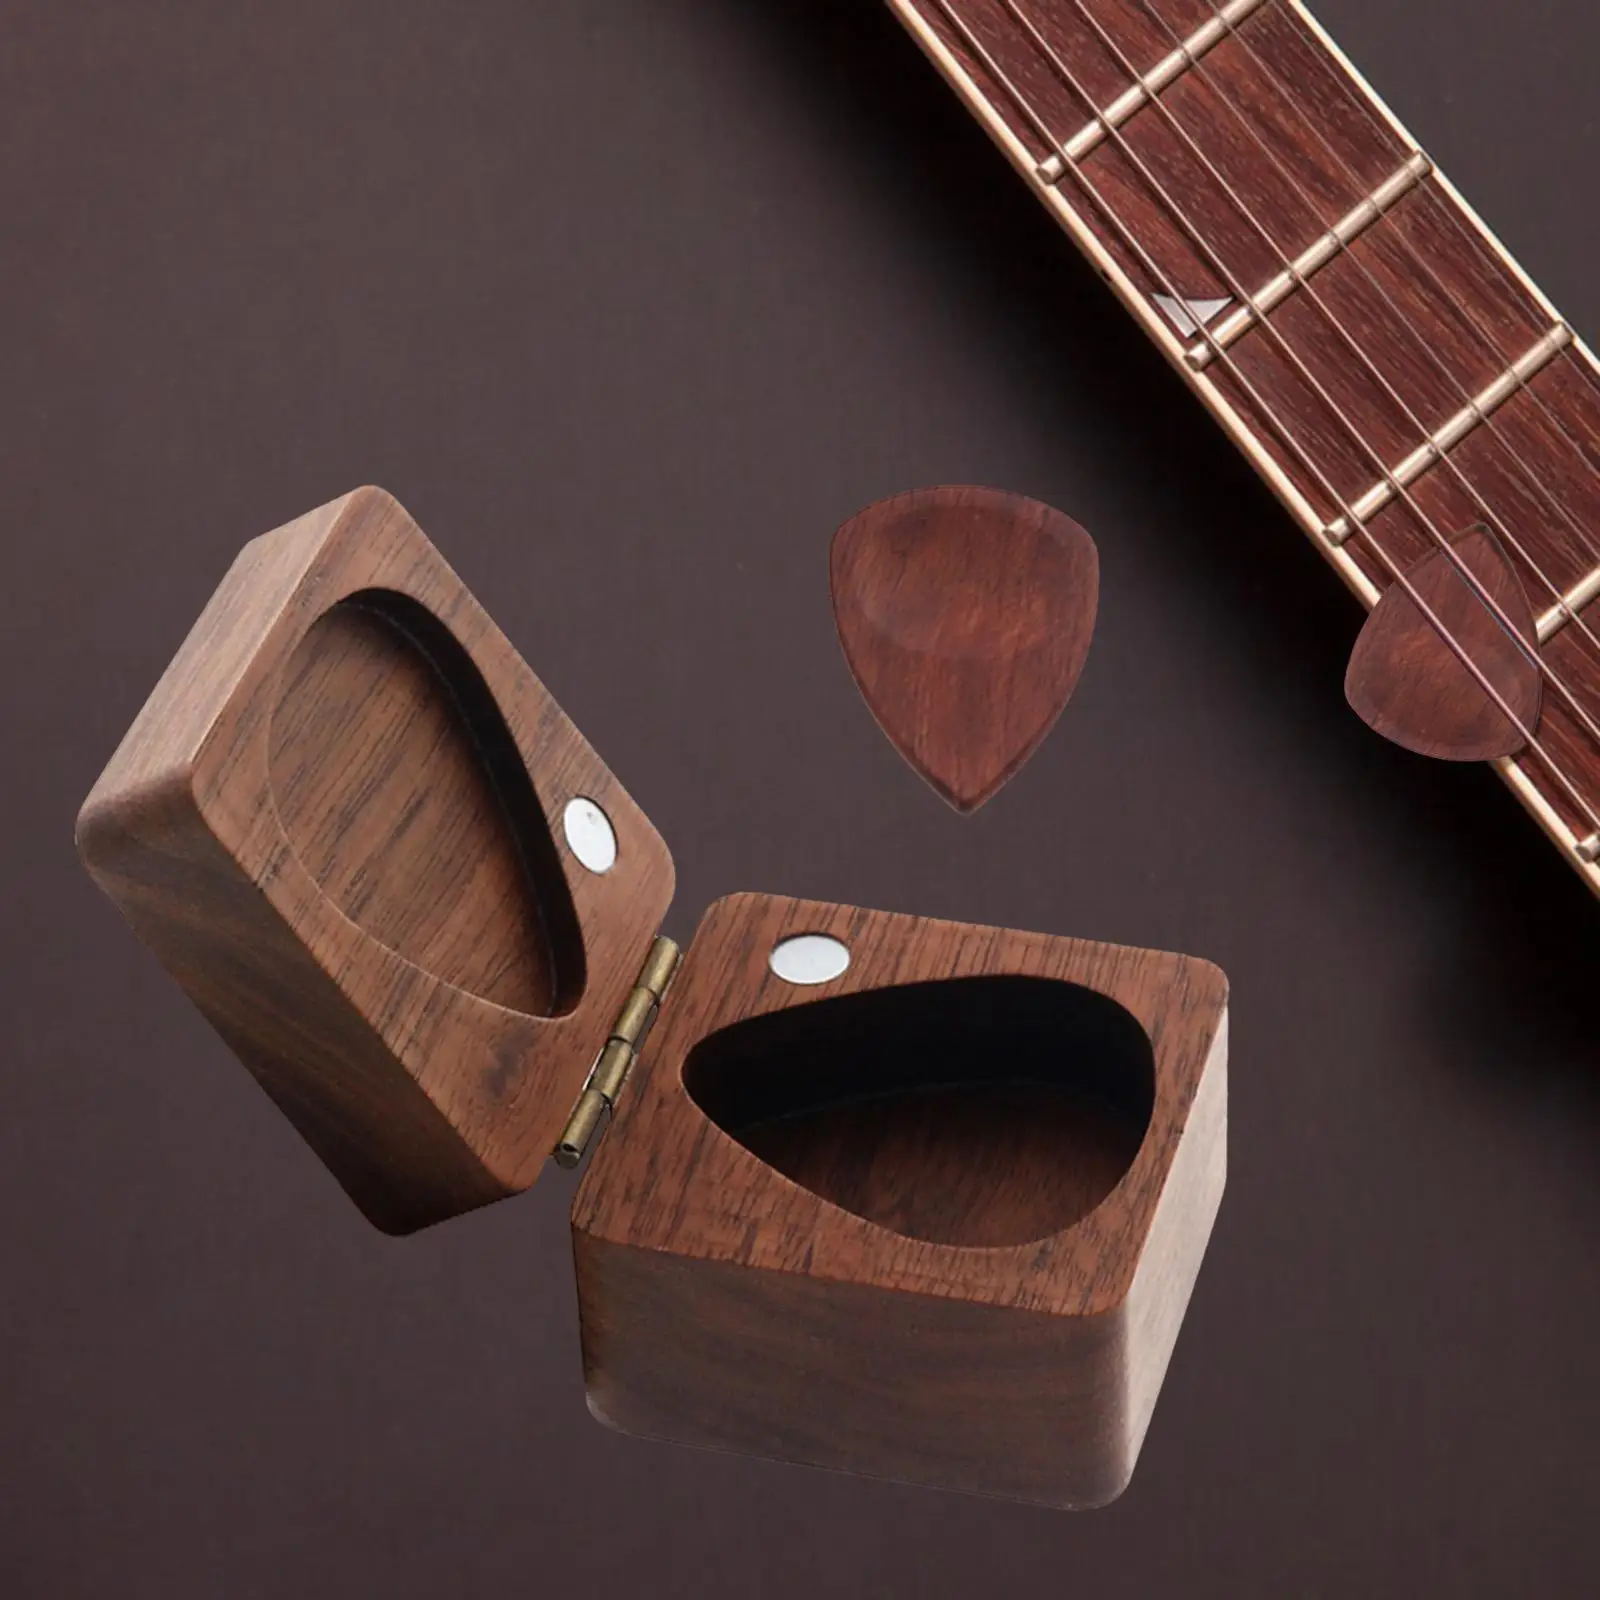 Solid Wood Guitar Picks Case Mini Jewelry Box Sturdy Guitar Accessories